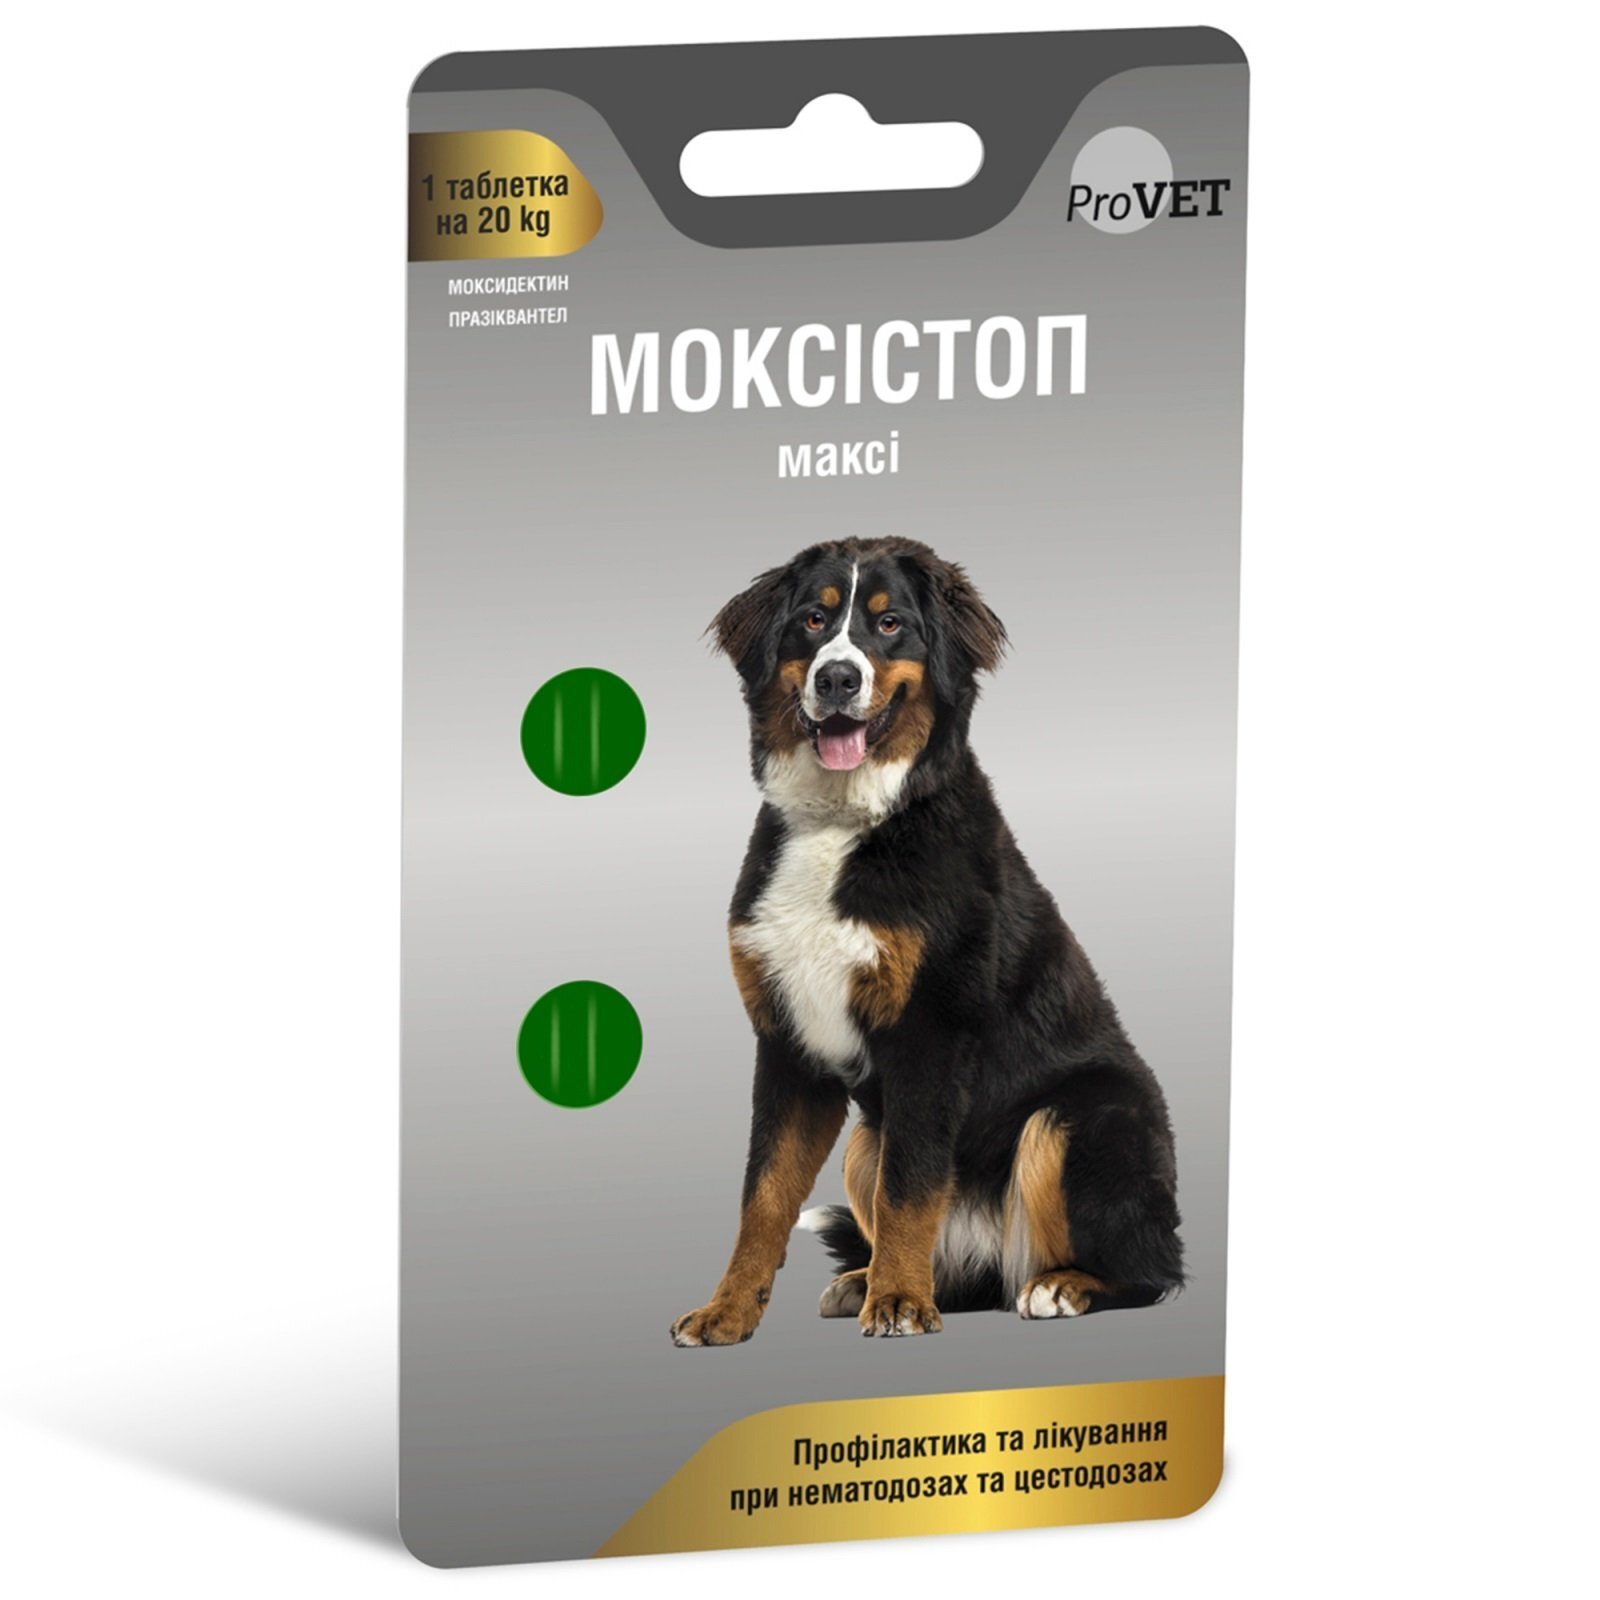 Антигельмінтний препарат ProVET Моксістоп максі для собак, 2 таблетки по 500 мгфото1